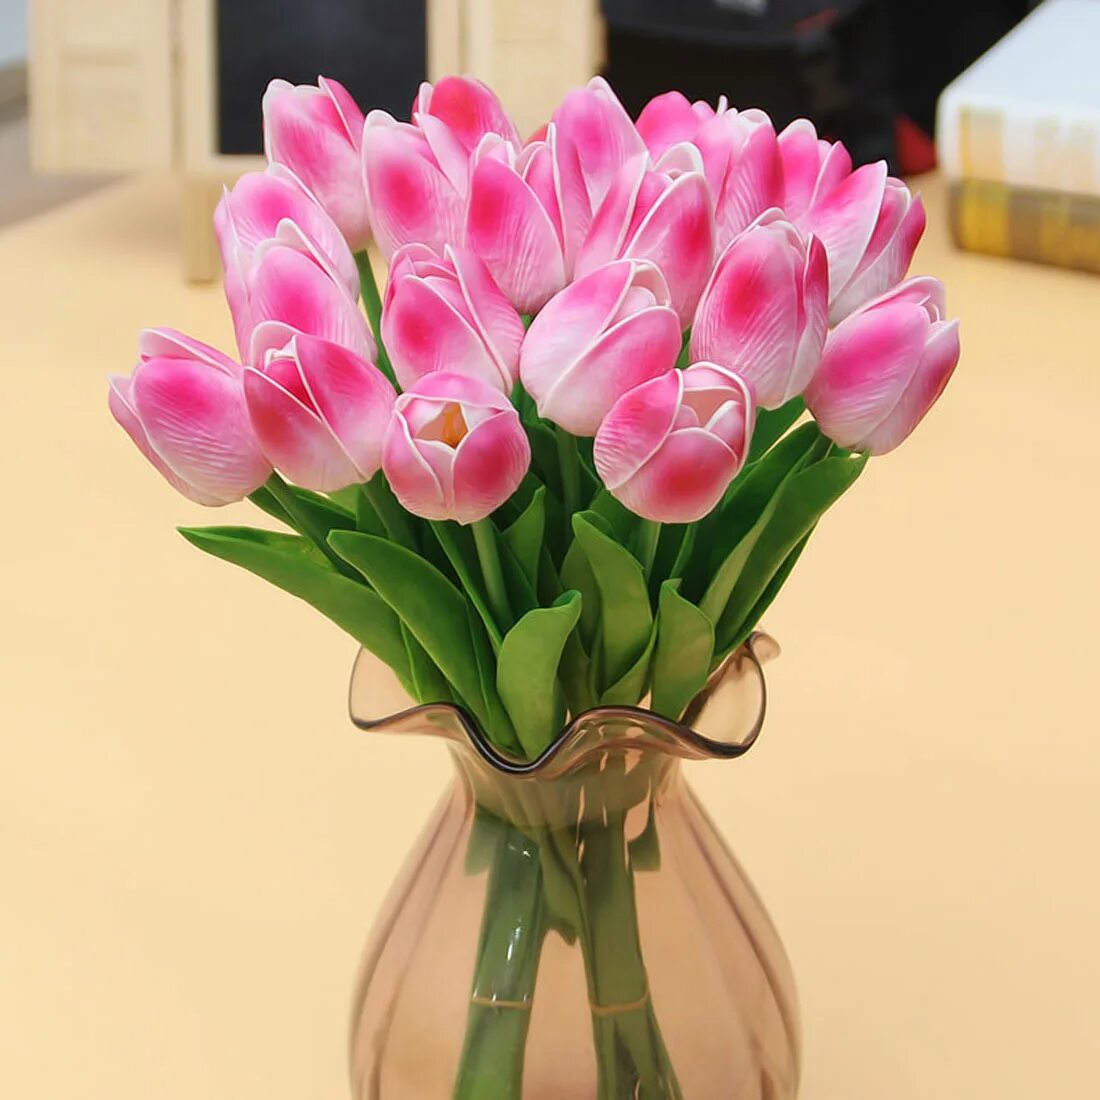 Фото тюльпанов в букете дома. Букет тюльпанов. Букет тюльпанов в вазе. Розовые тюльпаны. Букеты тюльпанов реальное.